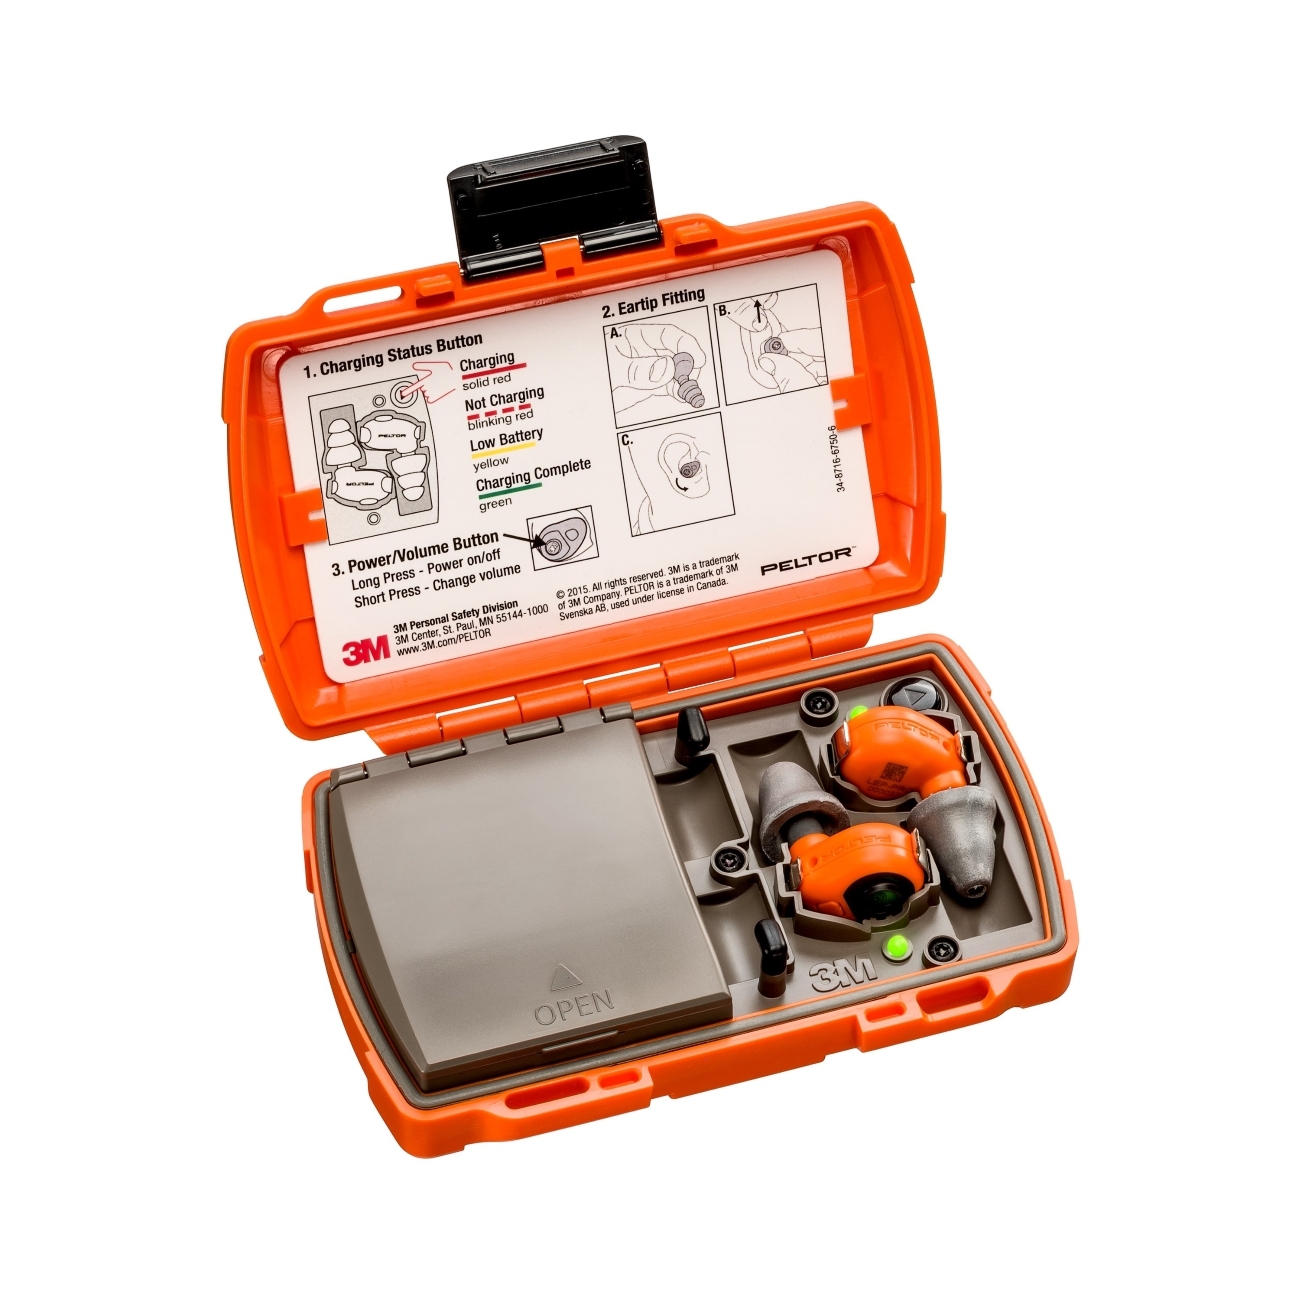 3M Peltor LEP-200 EU oranssi, jossa on lisäantenni äänisignaalien langatonta vastaanottoa varten, setti: korvatulpat ja latausasema (suljetulla kannella ja USB-porteilla) ovat IP-54-luokiteltuja ja vedenpitäviä (30 min. upotus 1 metrin syvyyteen asti